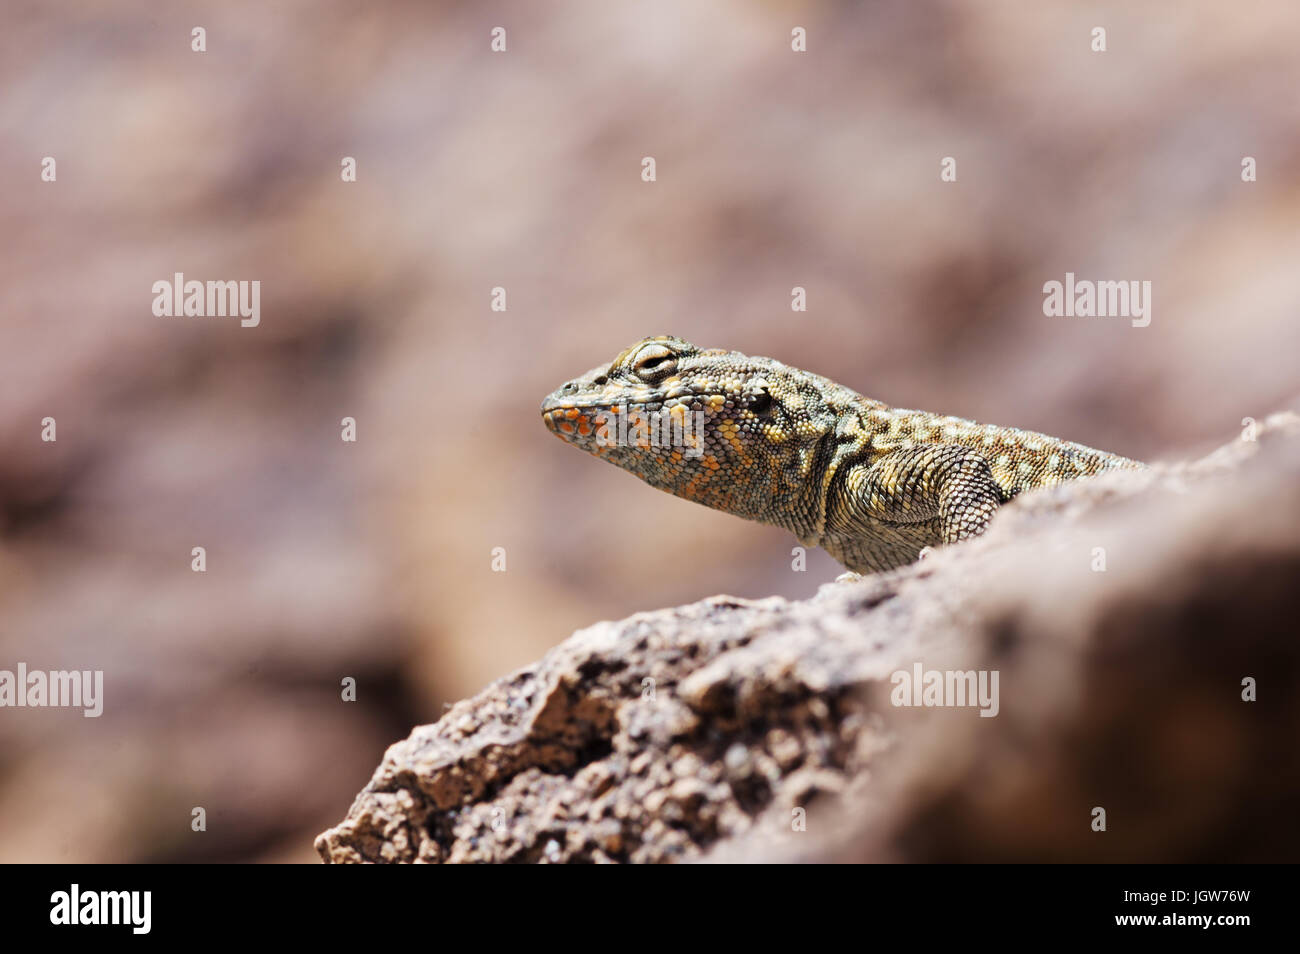 Testa di lato-spotted lizard su una roccia visto da leggermente al di sotto con spazio di copia Foto Stock